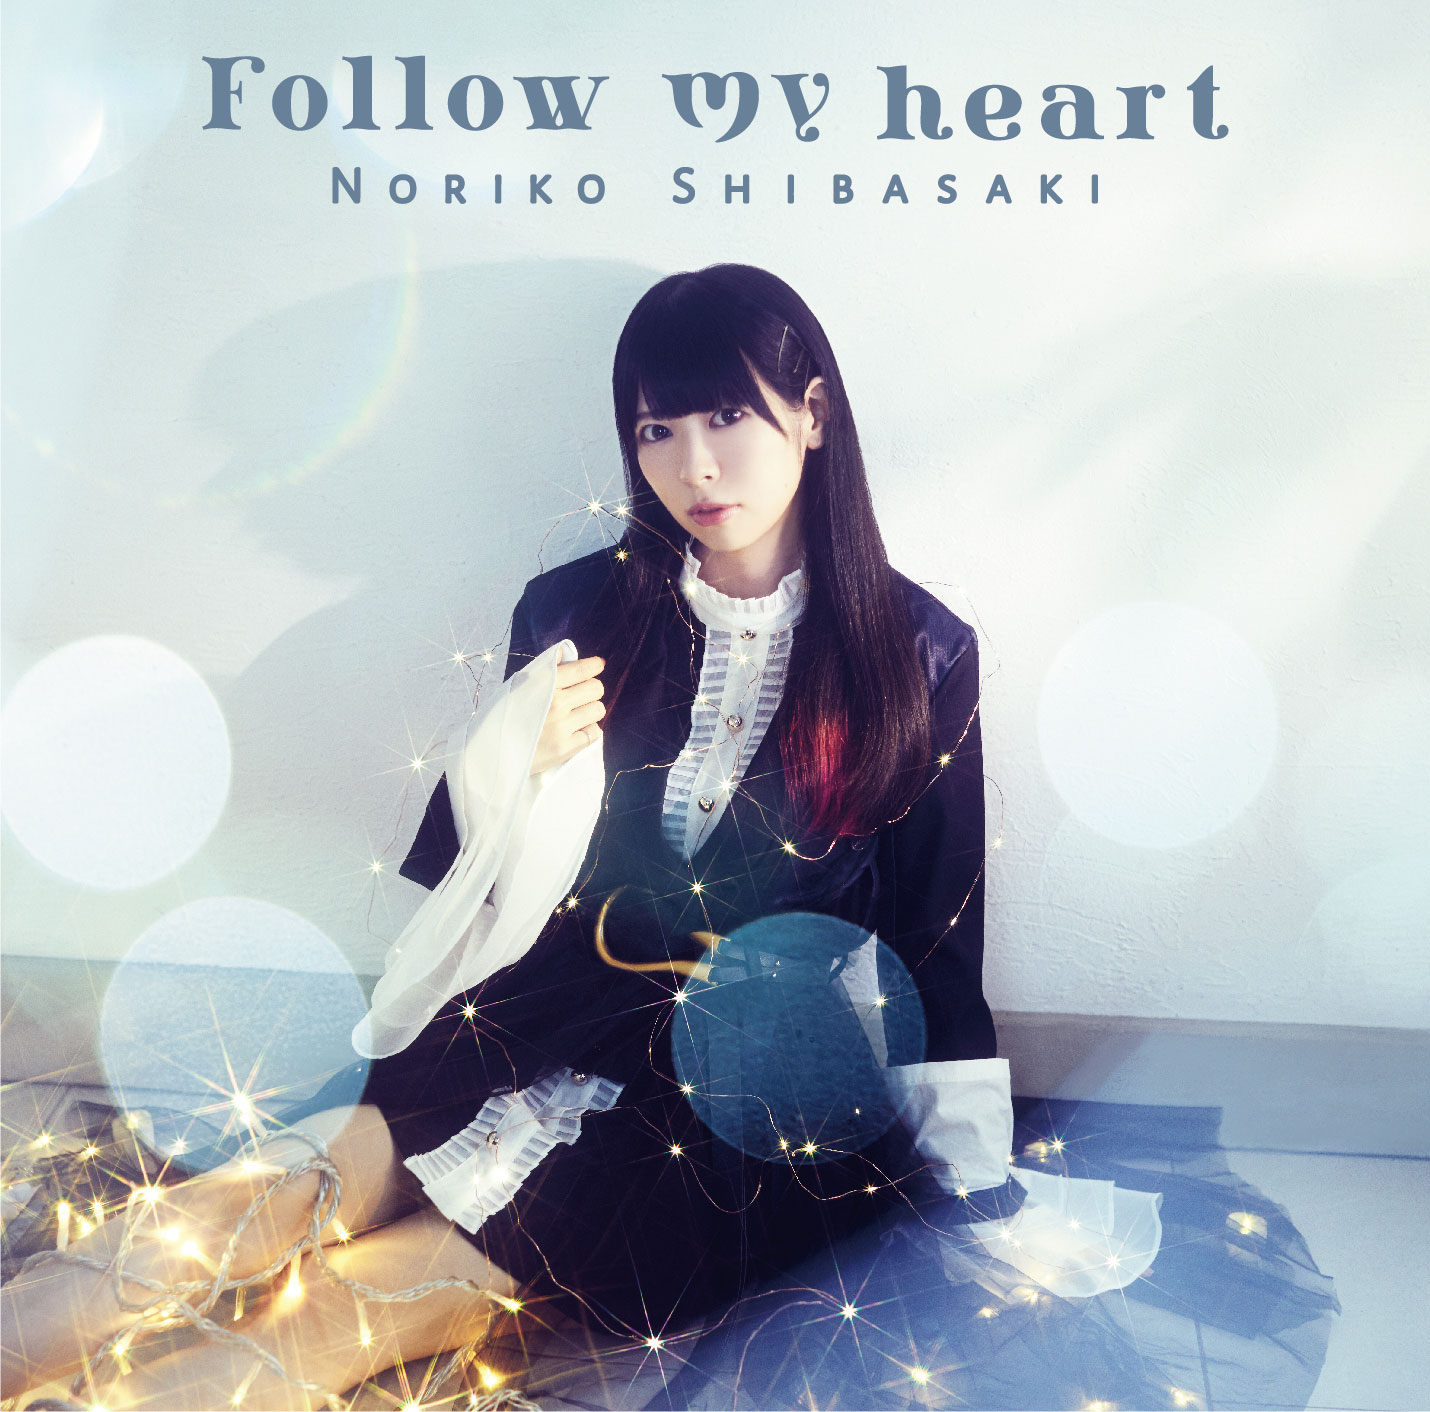 芝崎典子「Follow my heart」【初回限定盤】